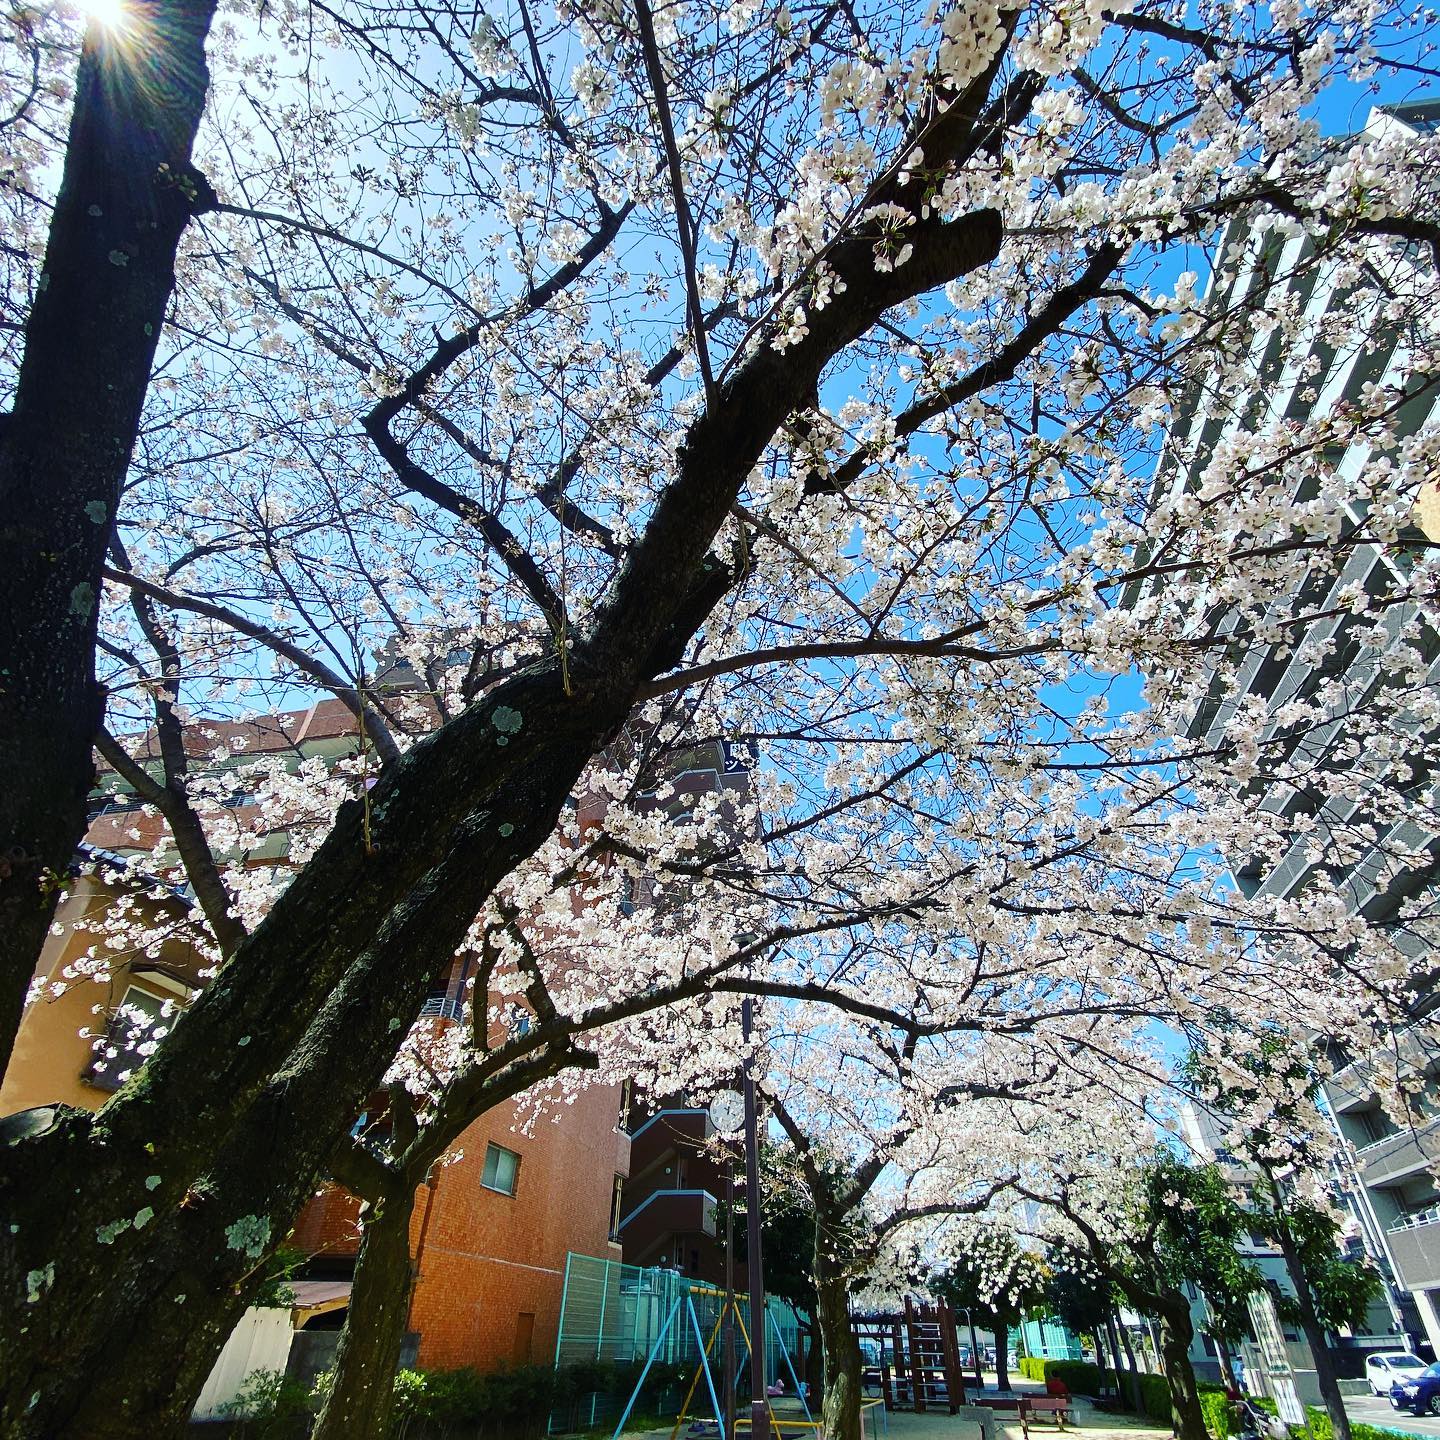 今日（2021/3/23）のサクラ。@松山市幸町公園住宅にの中にある小さな公園の桜はすでに満開！です。#松山市 #桜 #サクラ #満開 #満開の桜 #公園 #青空